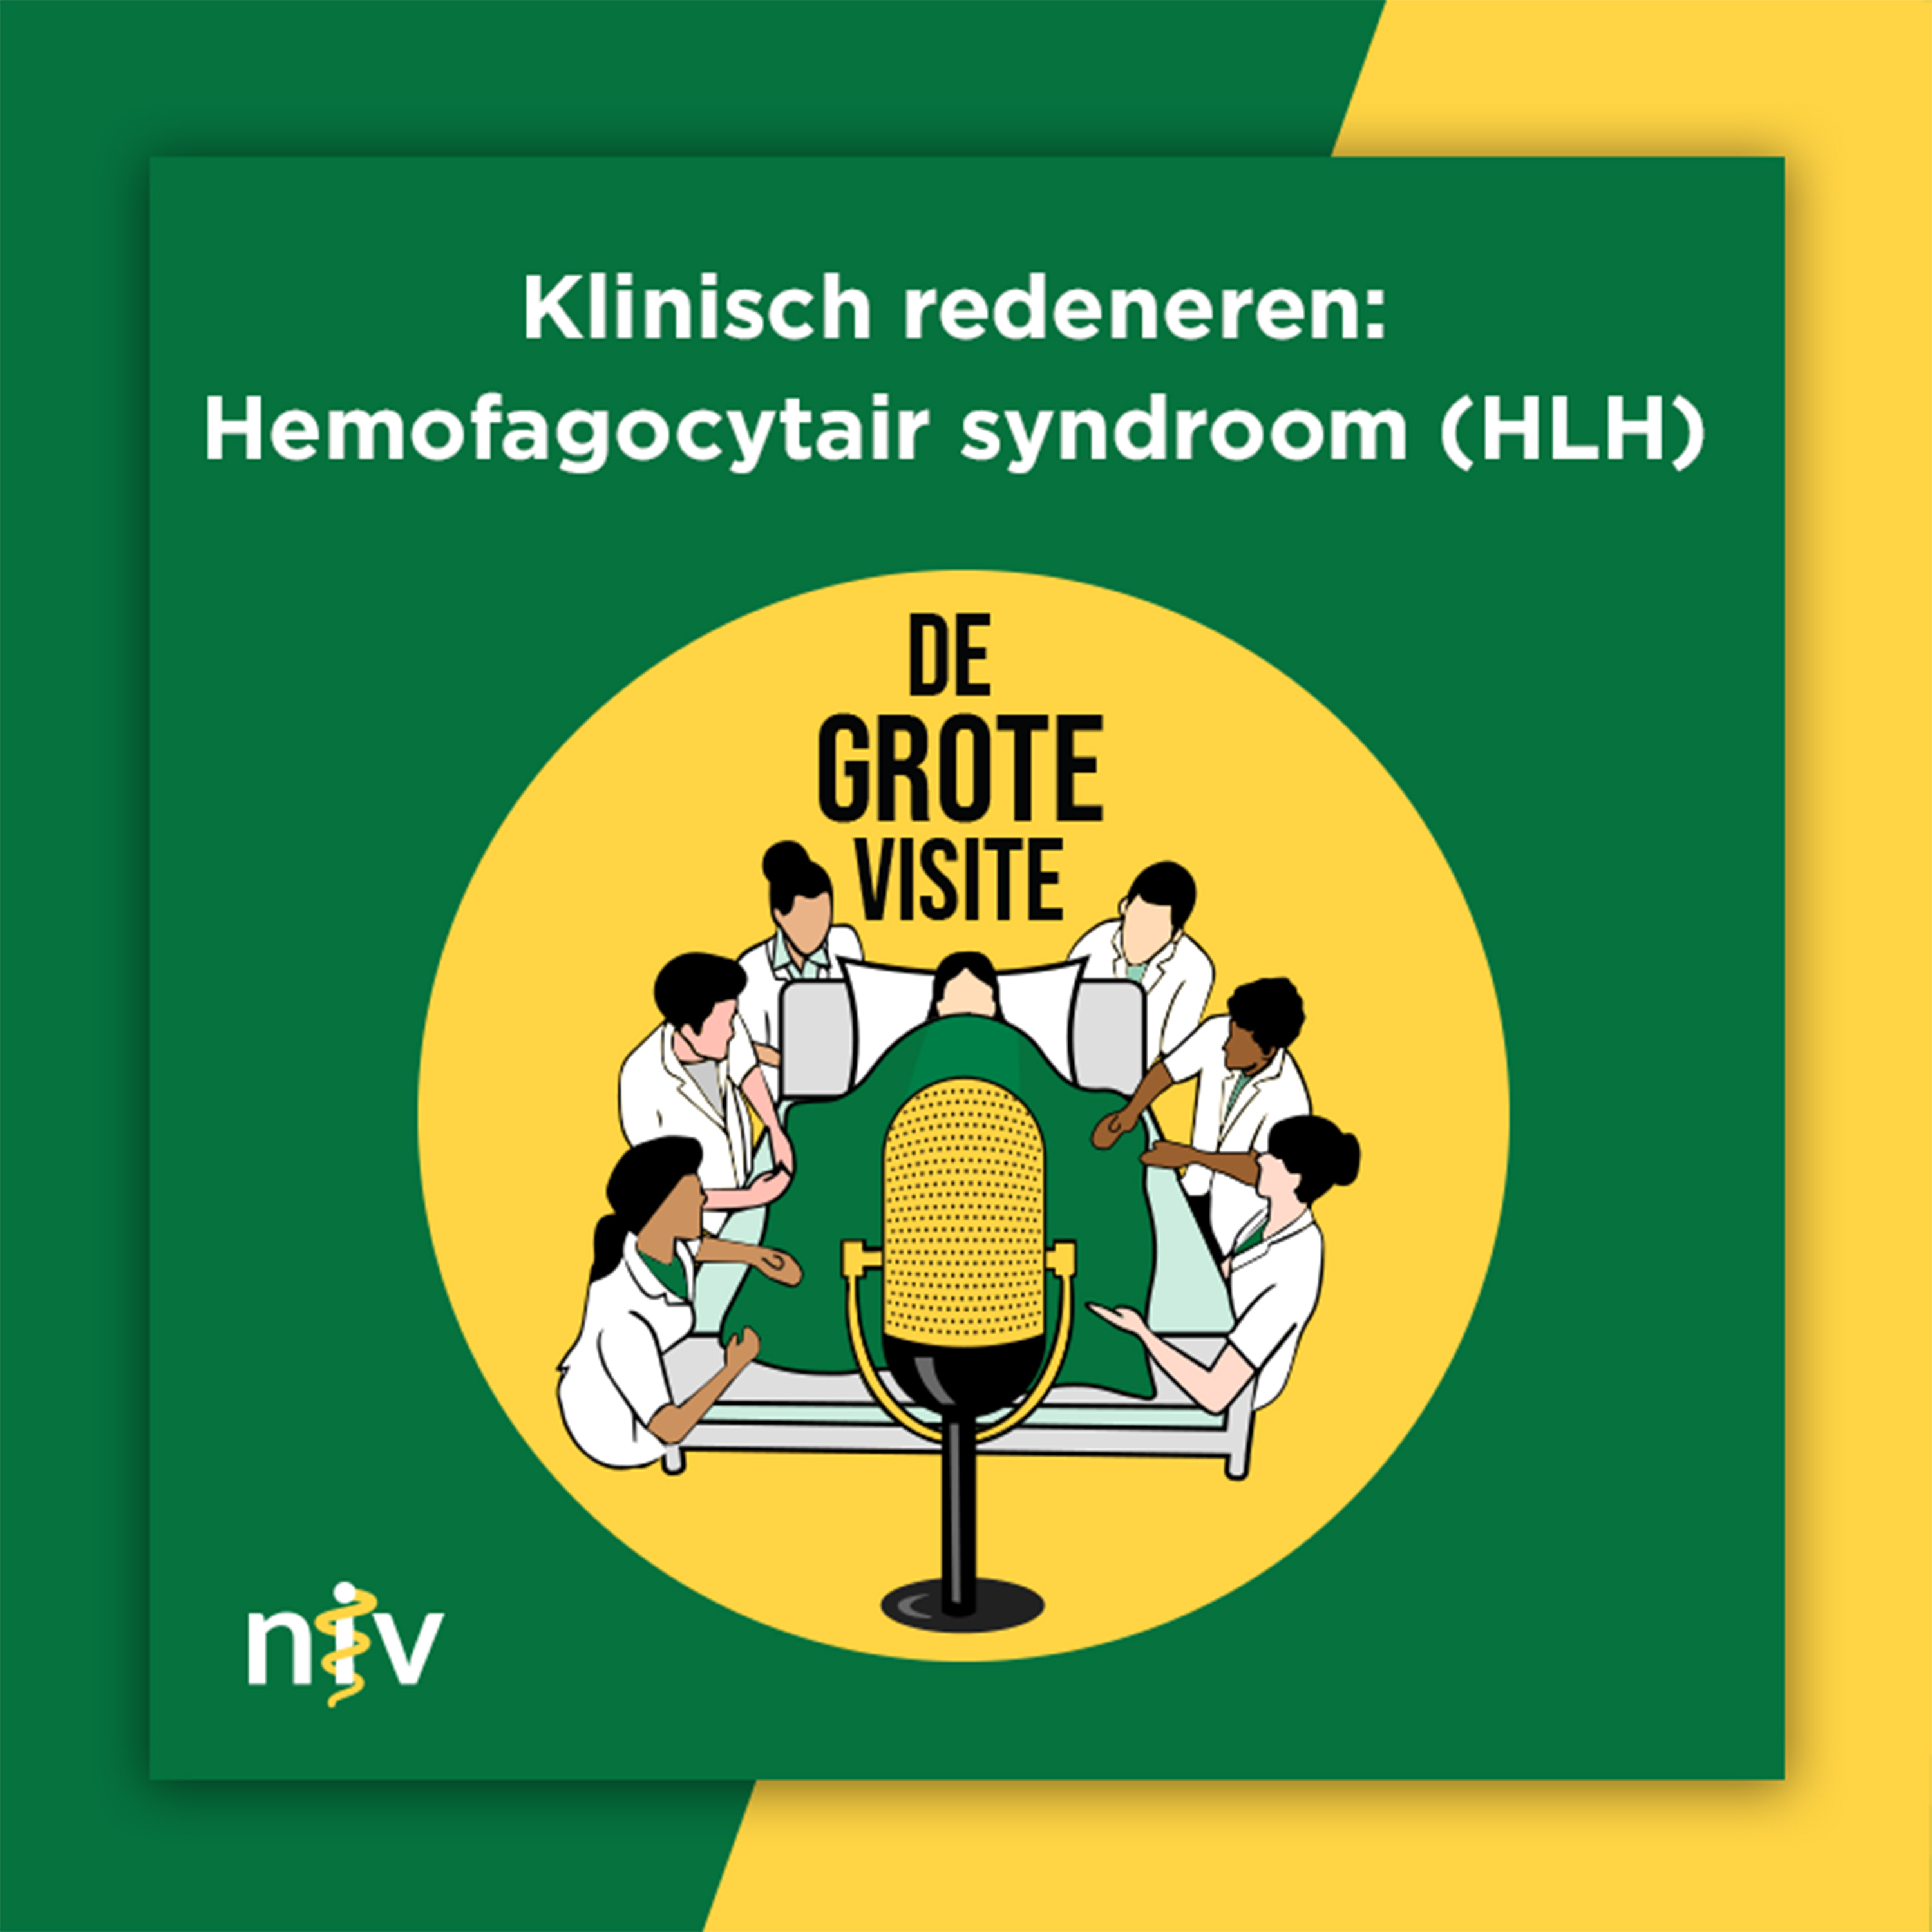 41. Klinisch redeneren: Hemofagocytair syndroom (HLH)